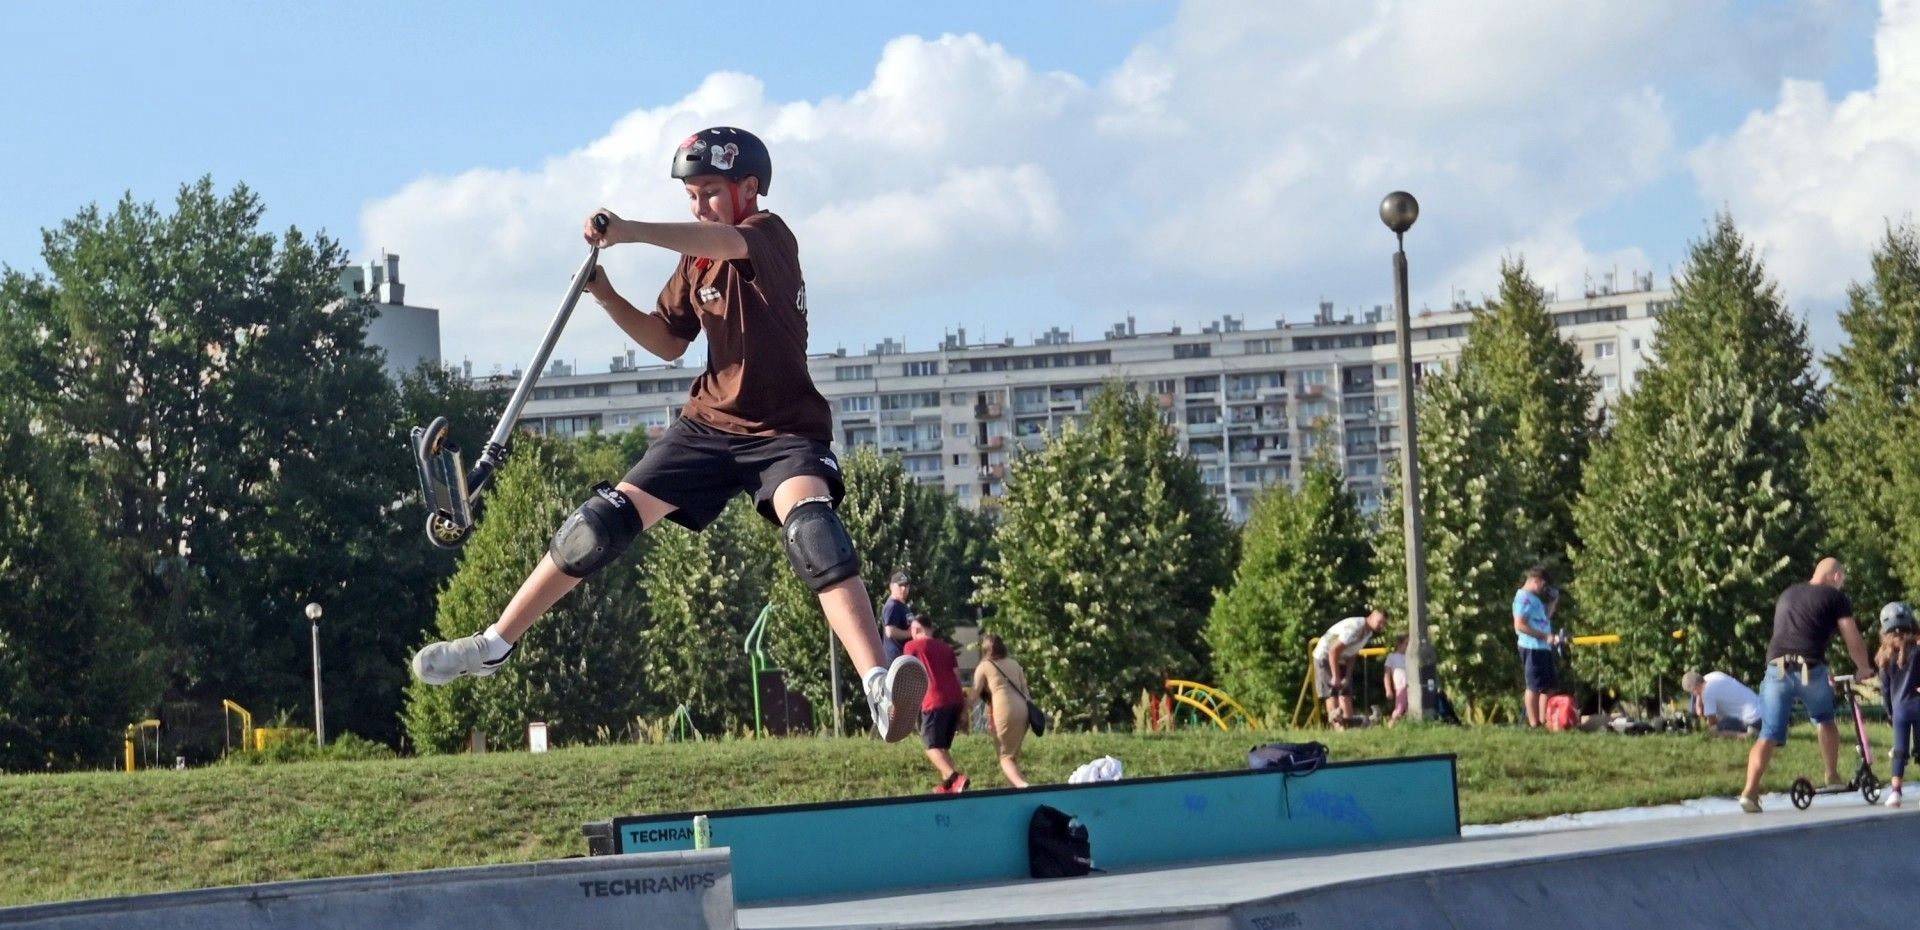 Rolki, hulajnoga, BMX, deskorolka - bezpłatne szkolenia w krakowskich skateparkach